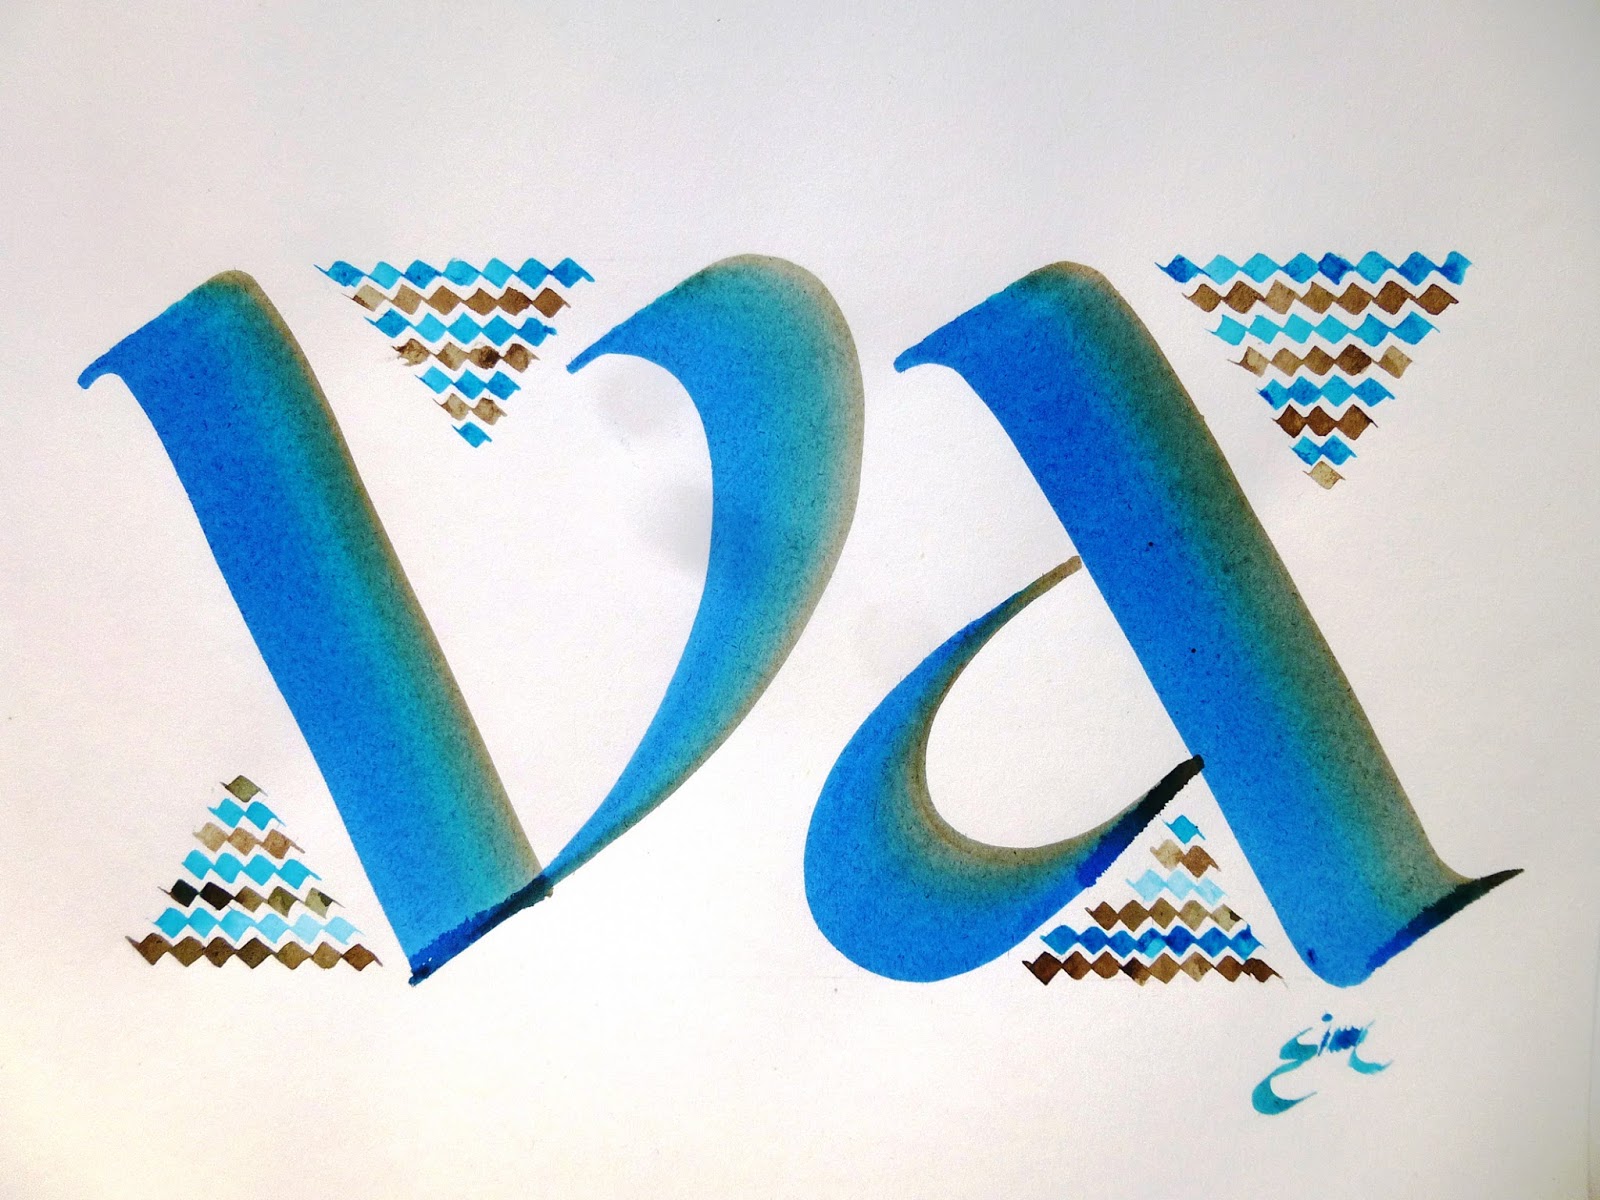 Les 20 Meilleures Images De Yveline Abernot En 2020 Calligraphie